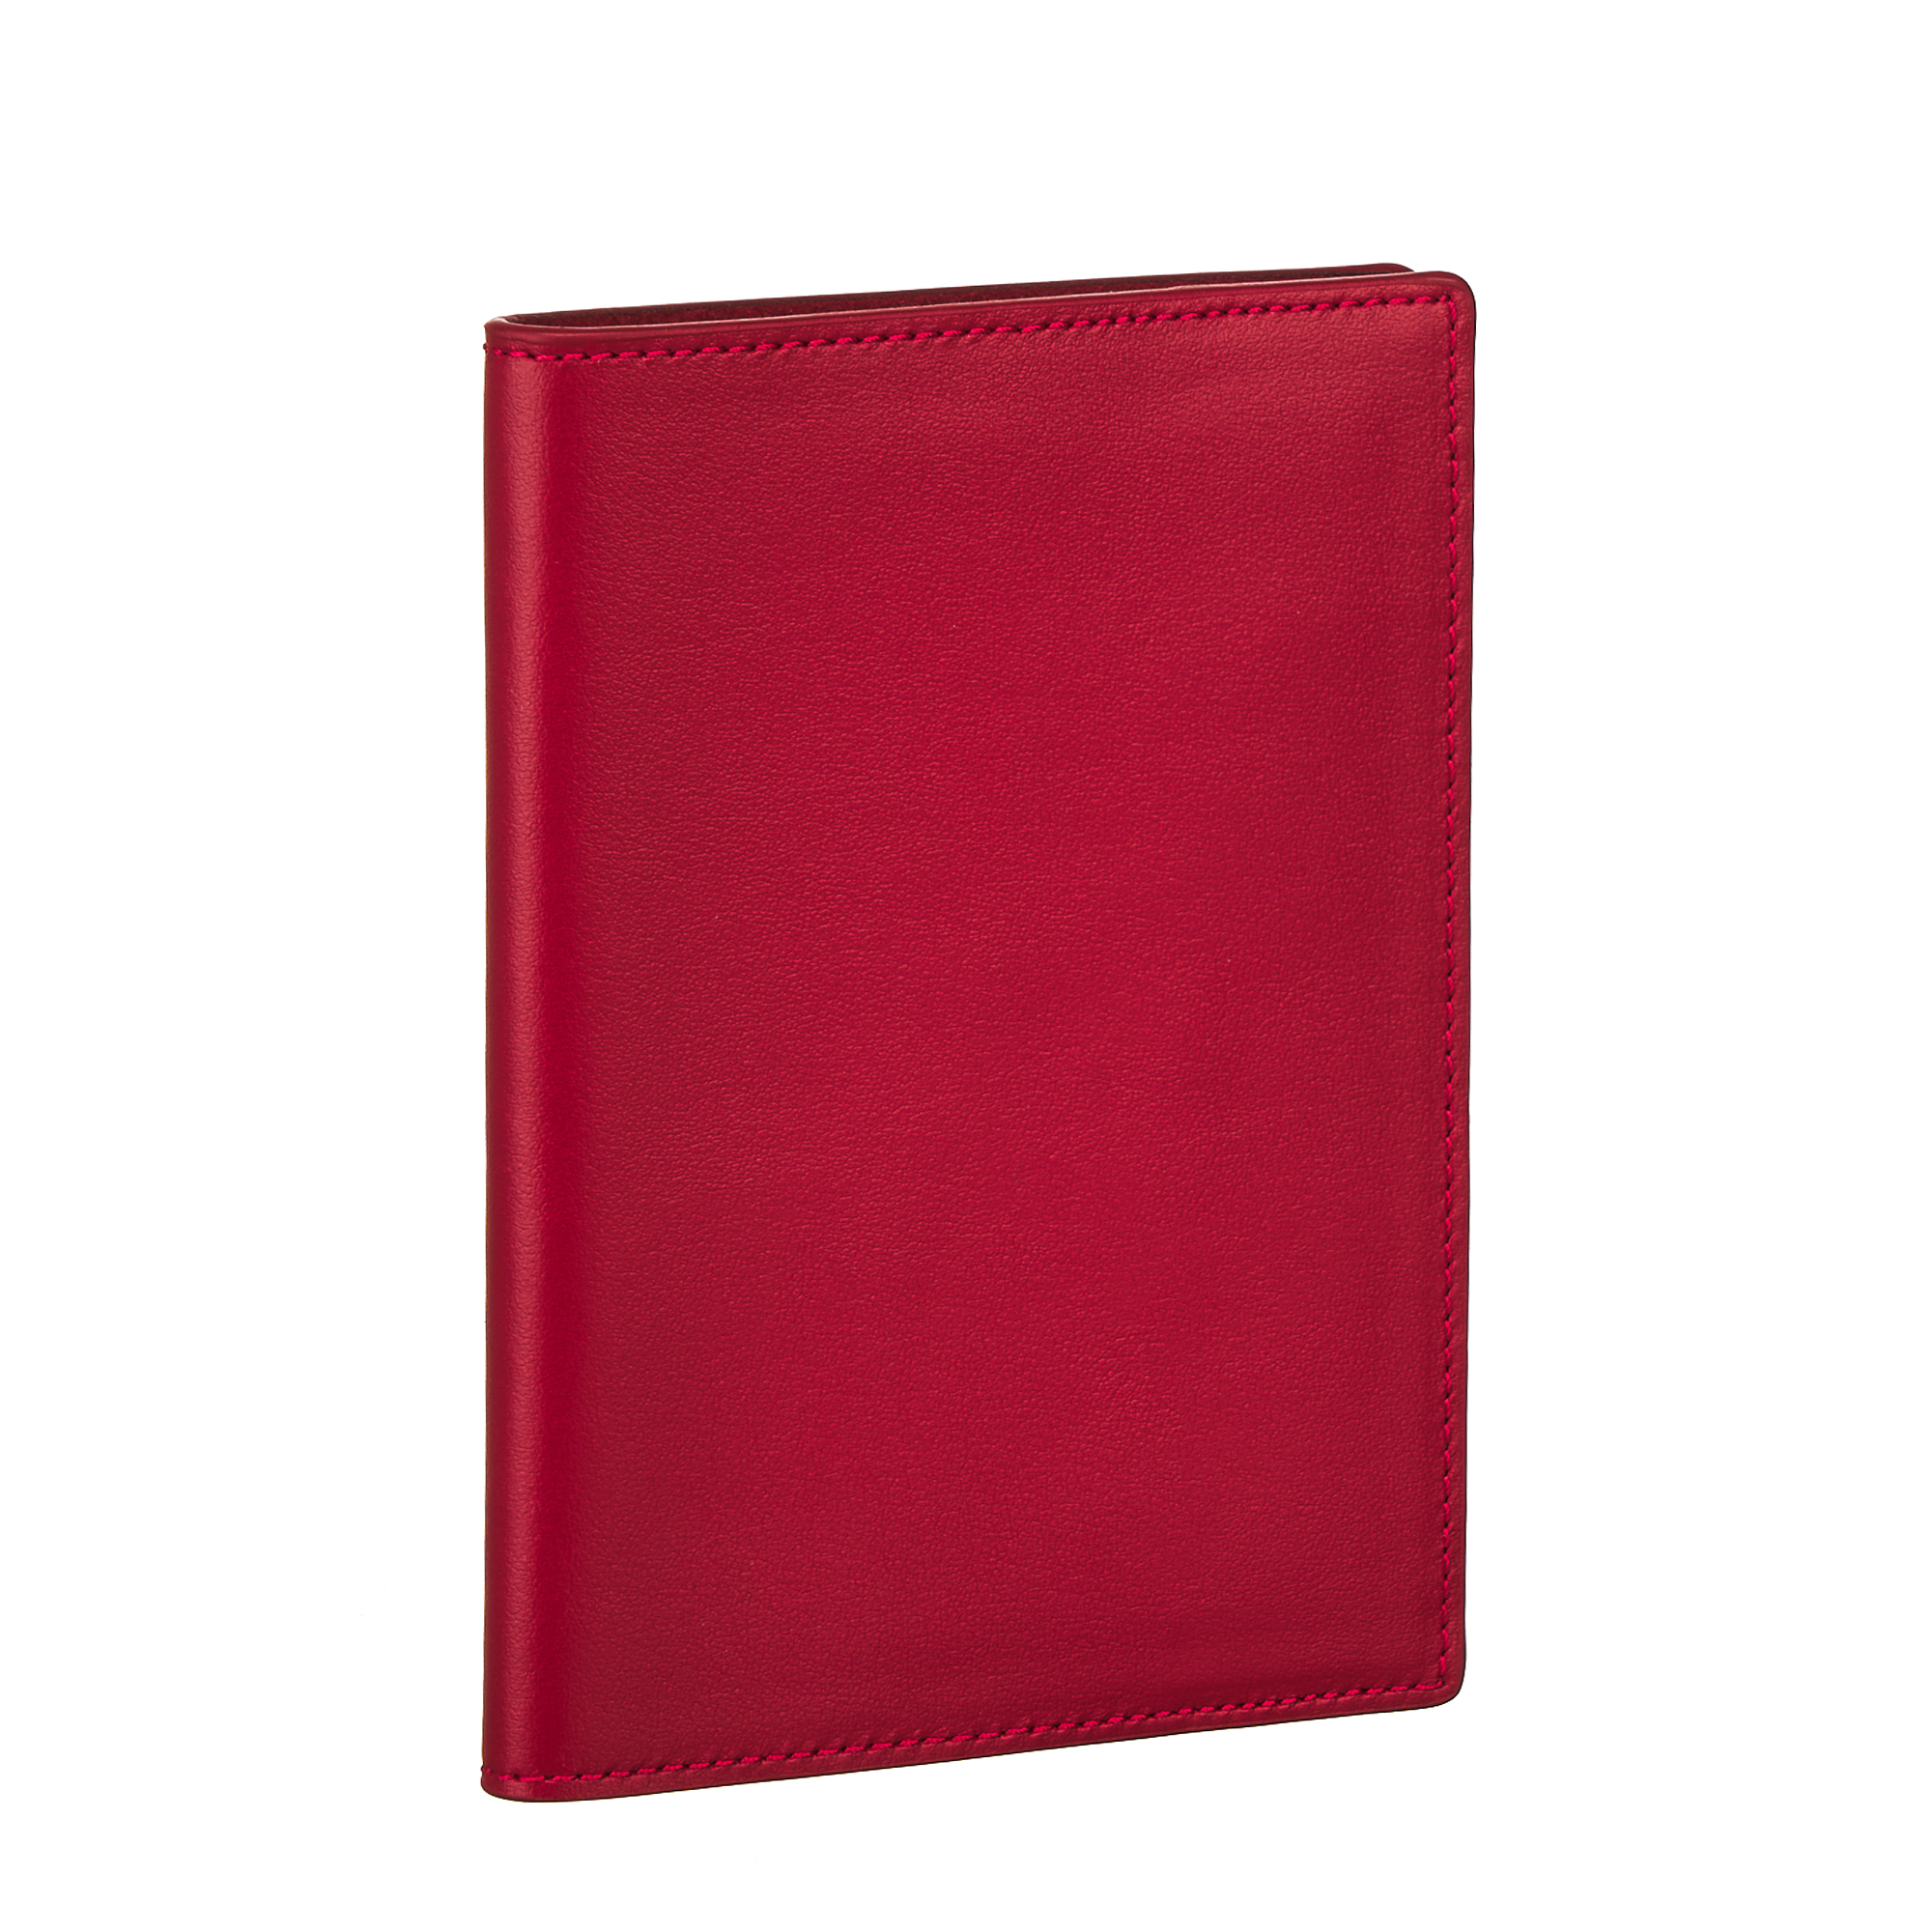 Др.Коффер 7011TZ-12 обложка для паспорта, цвет красный - фото 1